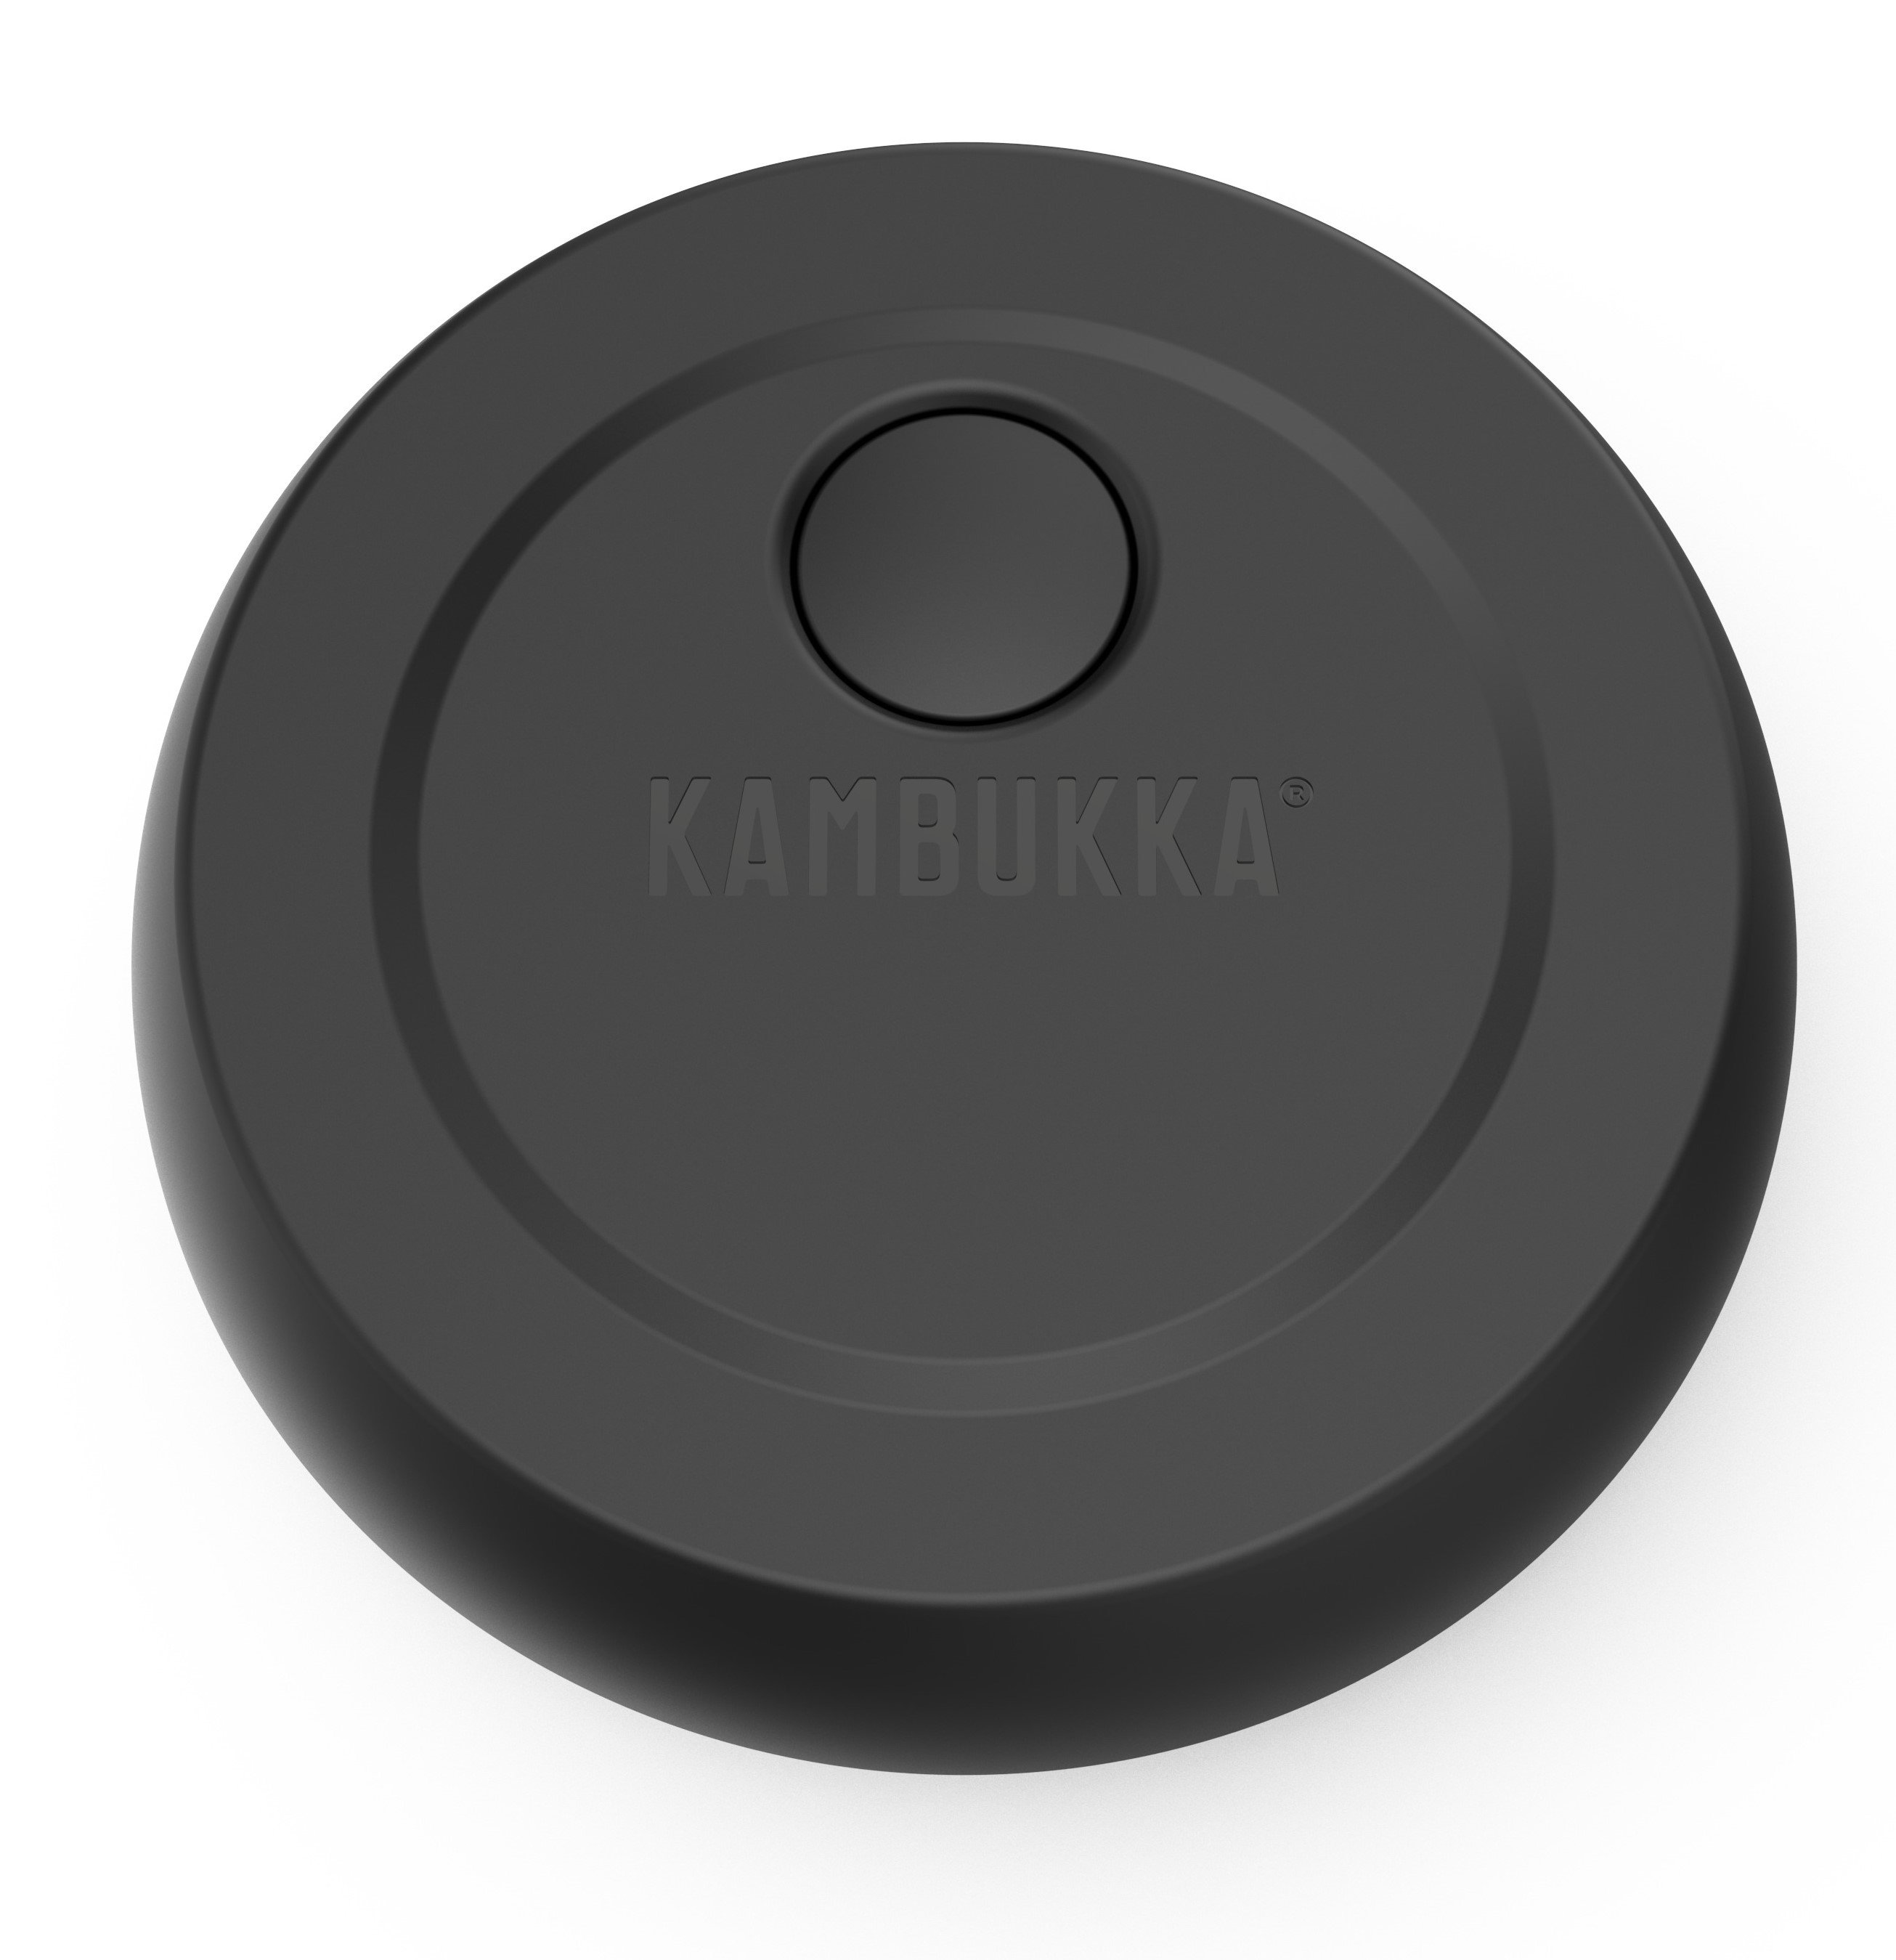 Термоконтейнер для їжі Kambukka Bora, 600 мл, чорний (11-06010) - фото 4